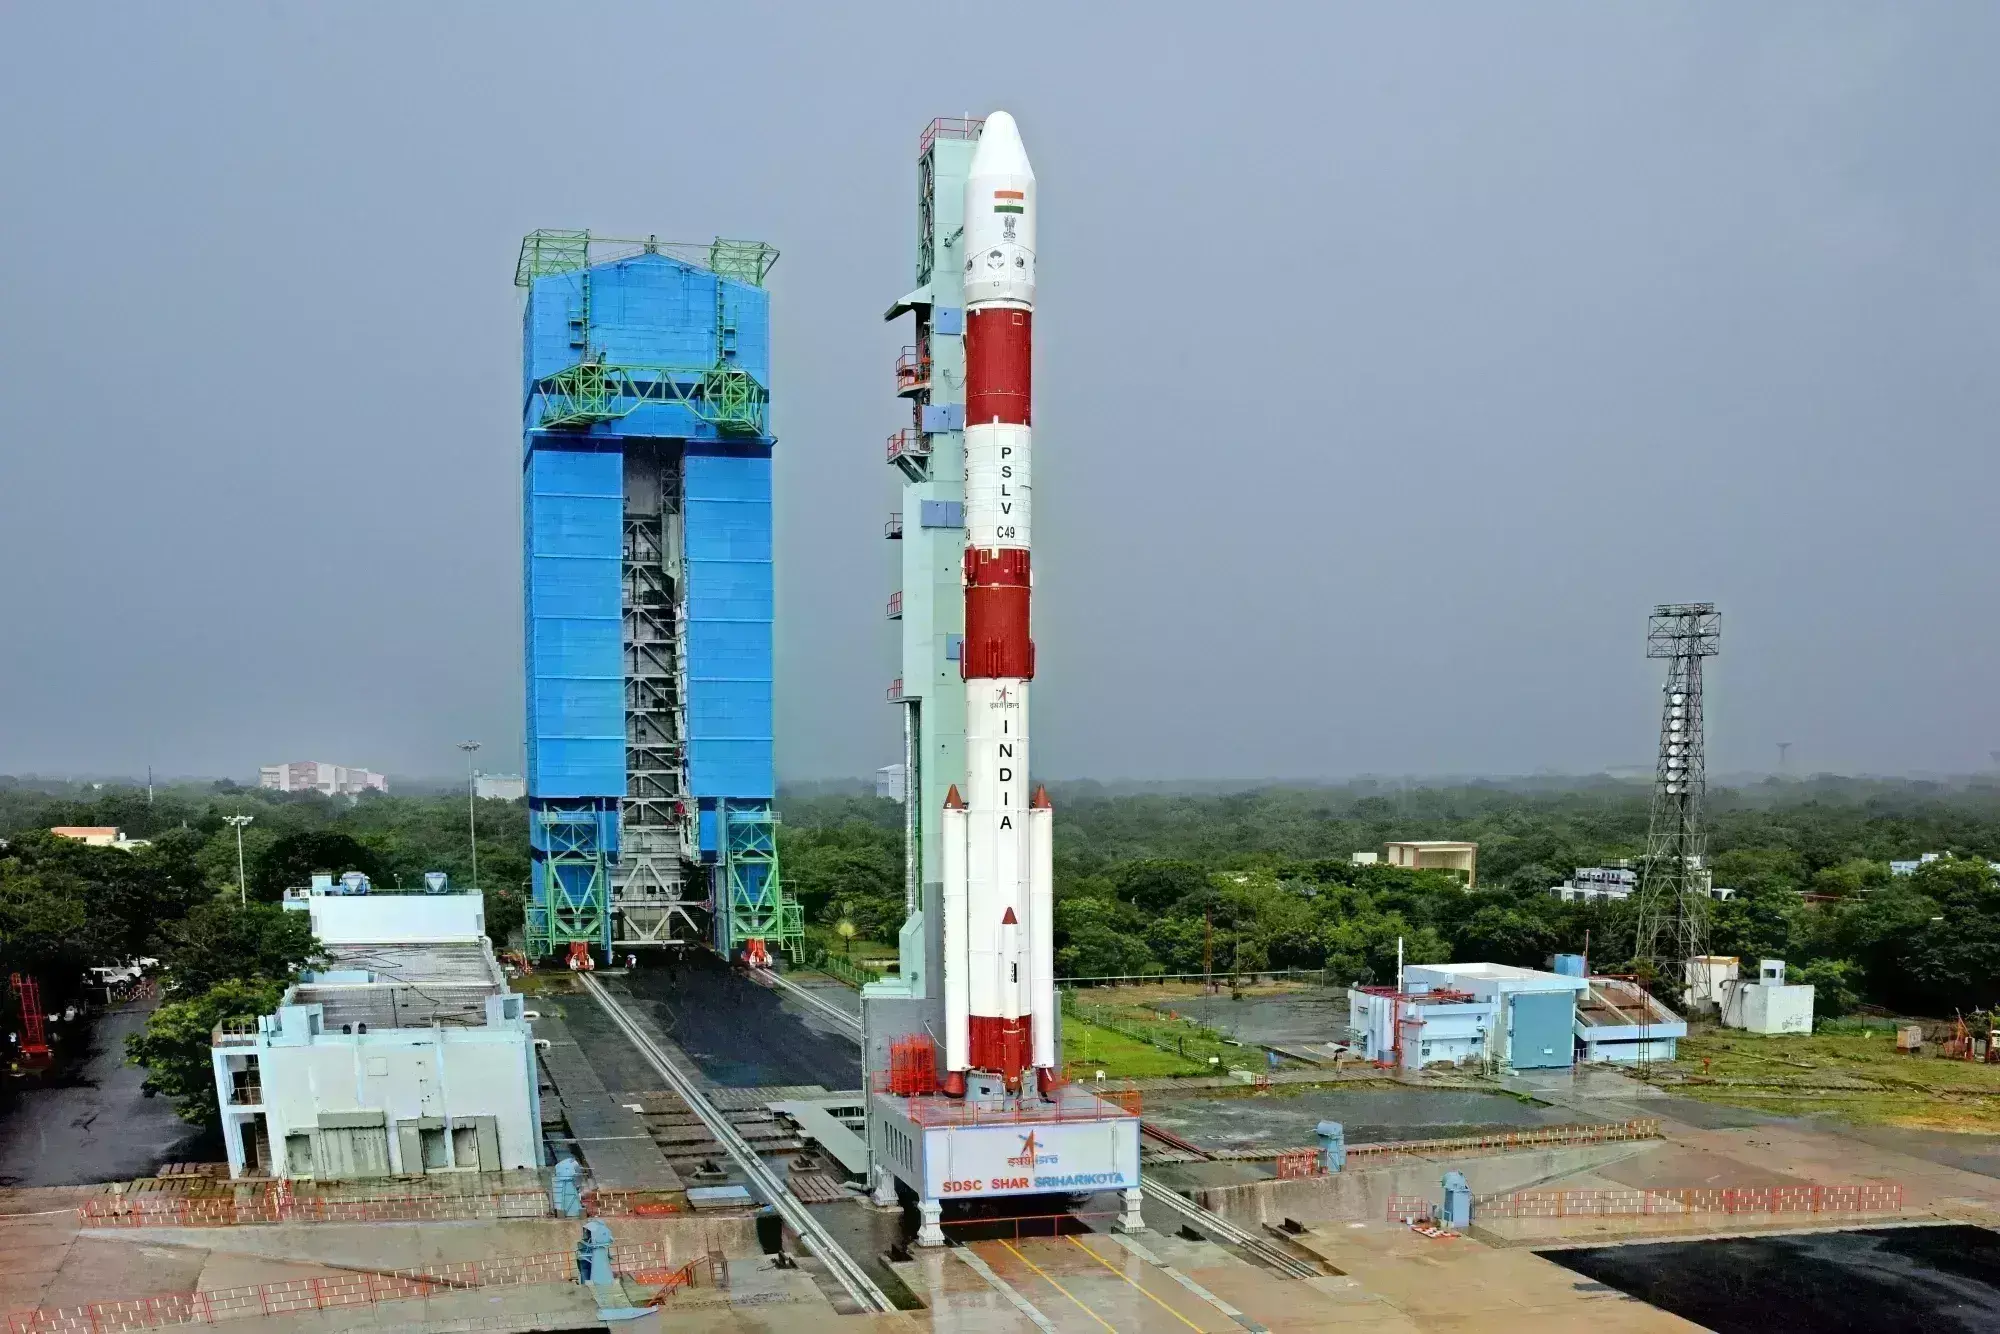 घरेलू परमाणु घड़ी के साथ 29 मई को नेविगेशन उपग्रह लॉन्च करेगा इसरो